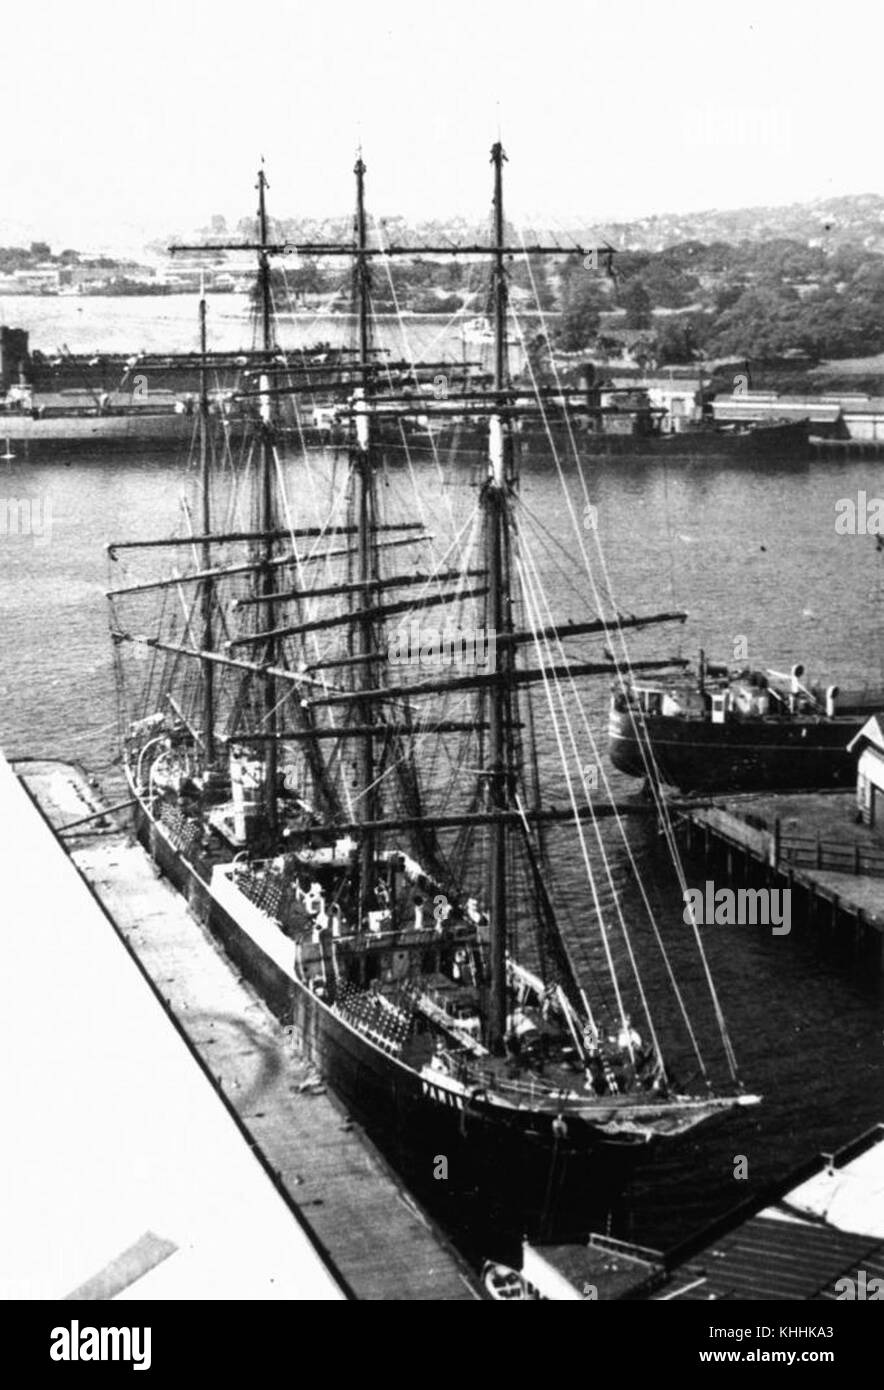 1 170831 Pamir (ship) Stock Photo